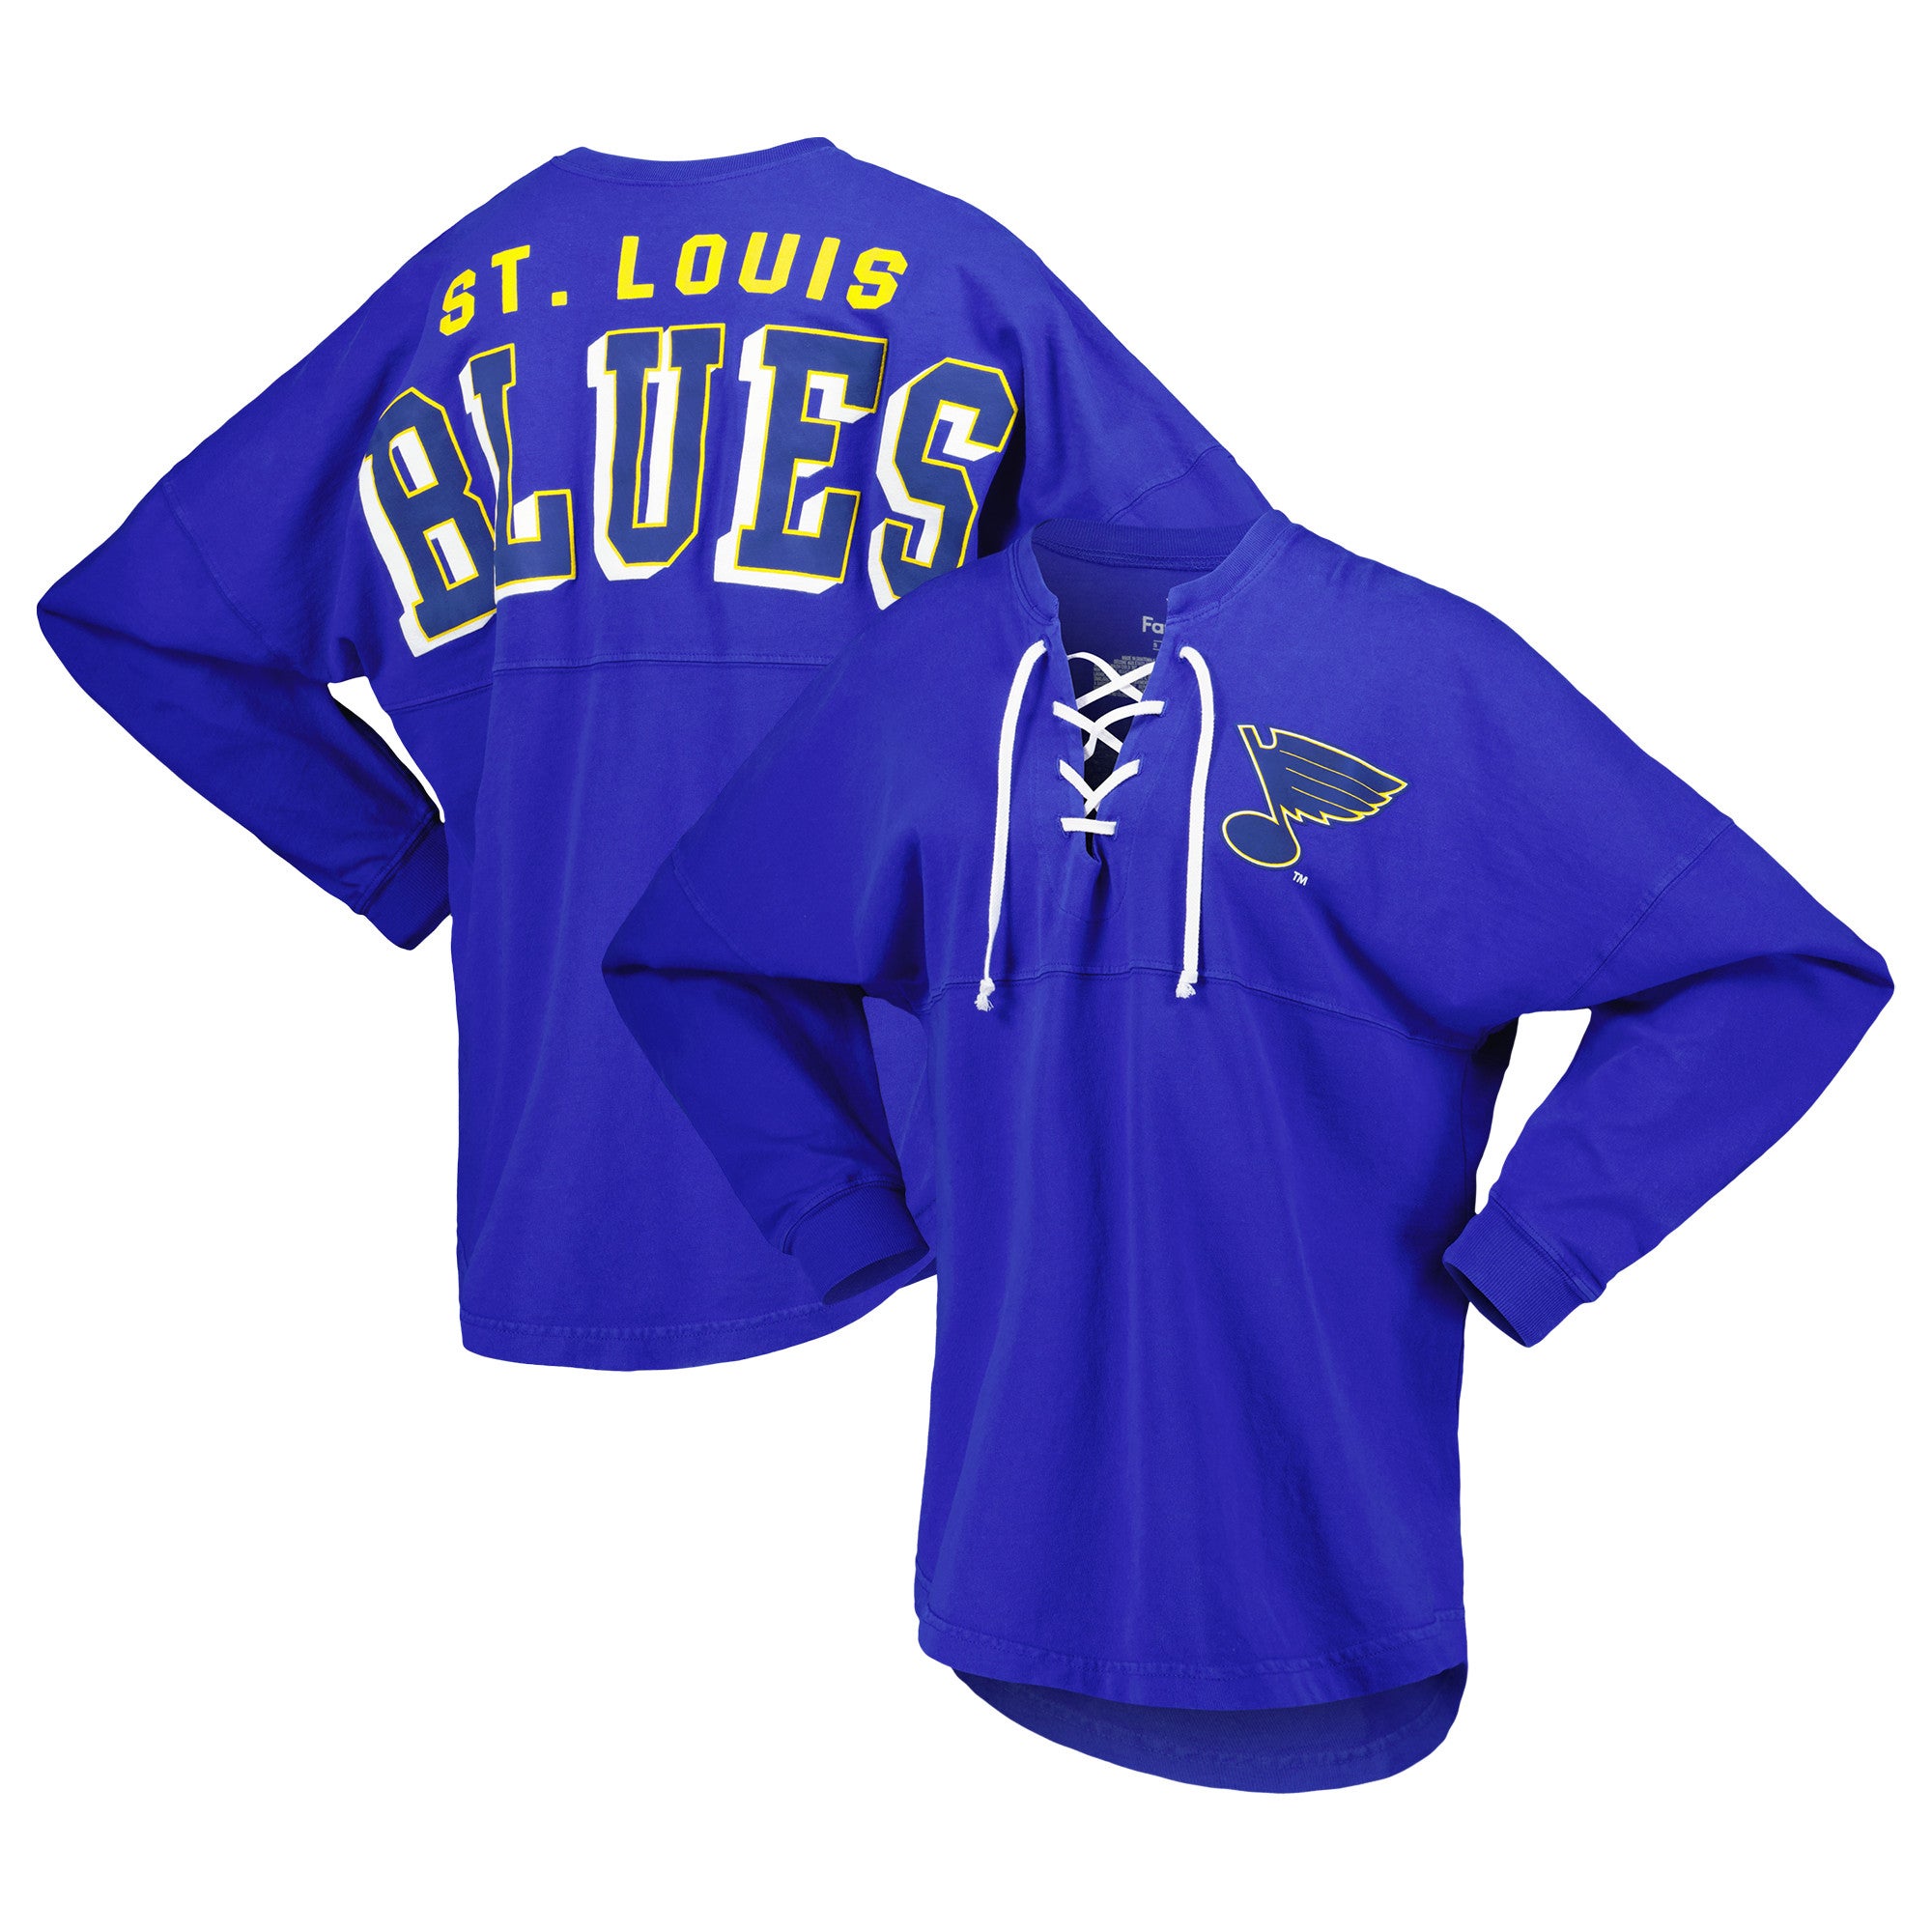 売れ筋新商品 ファナティクス ユニフォーム トップス メンズ Jordan Binnington St. Louis Blues Fanati  応援グッズ